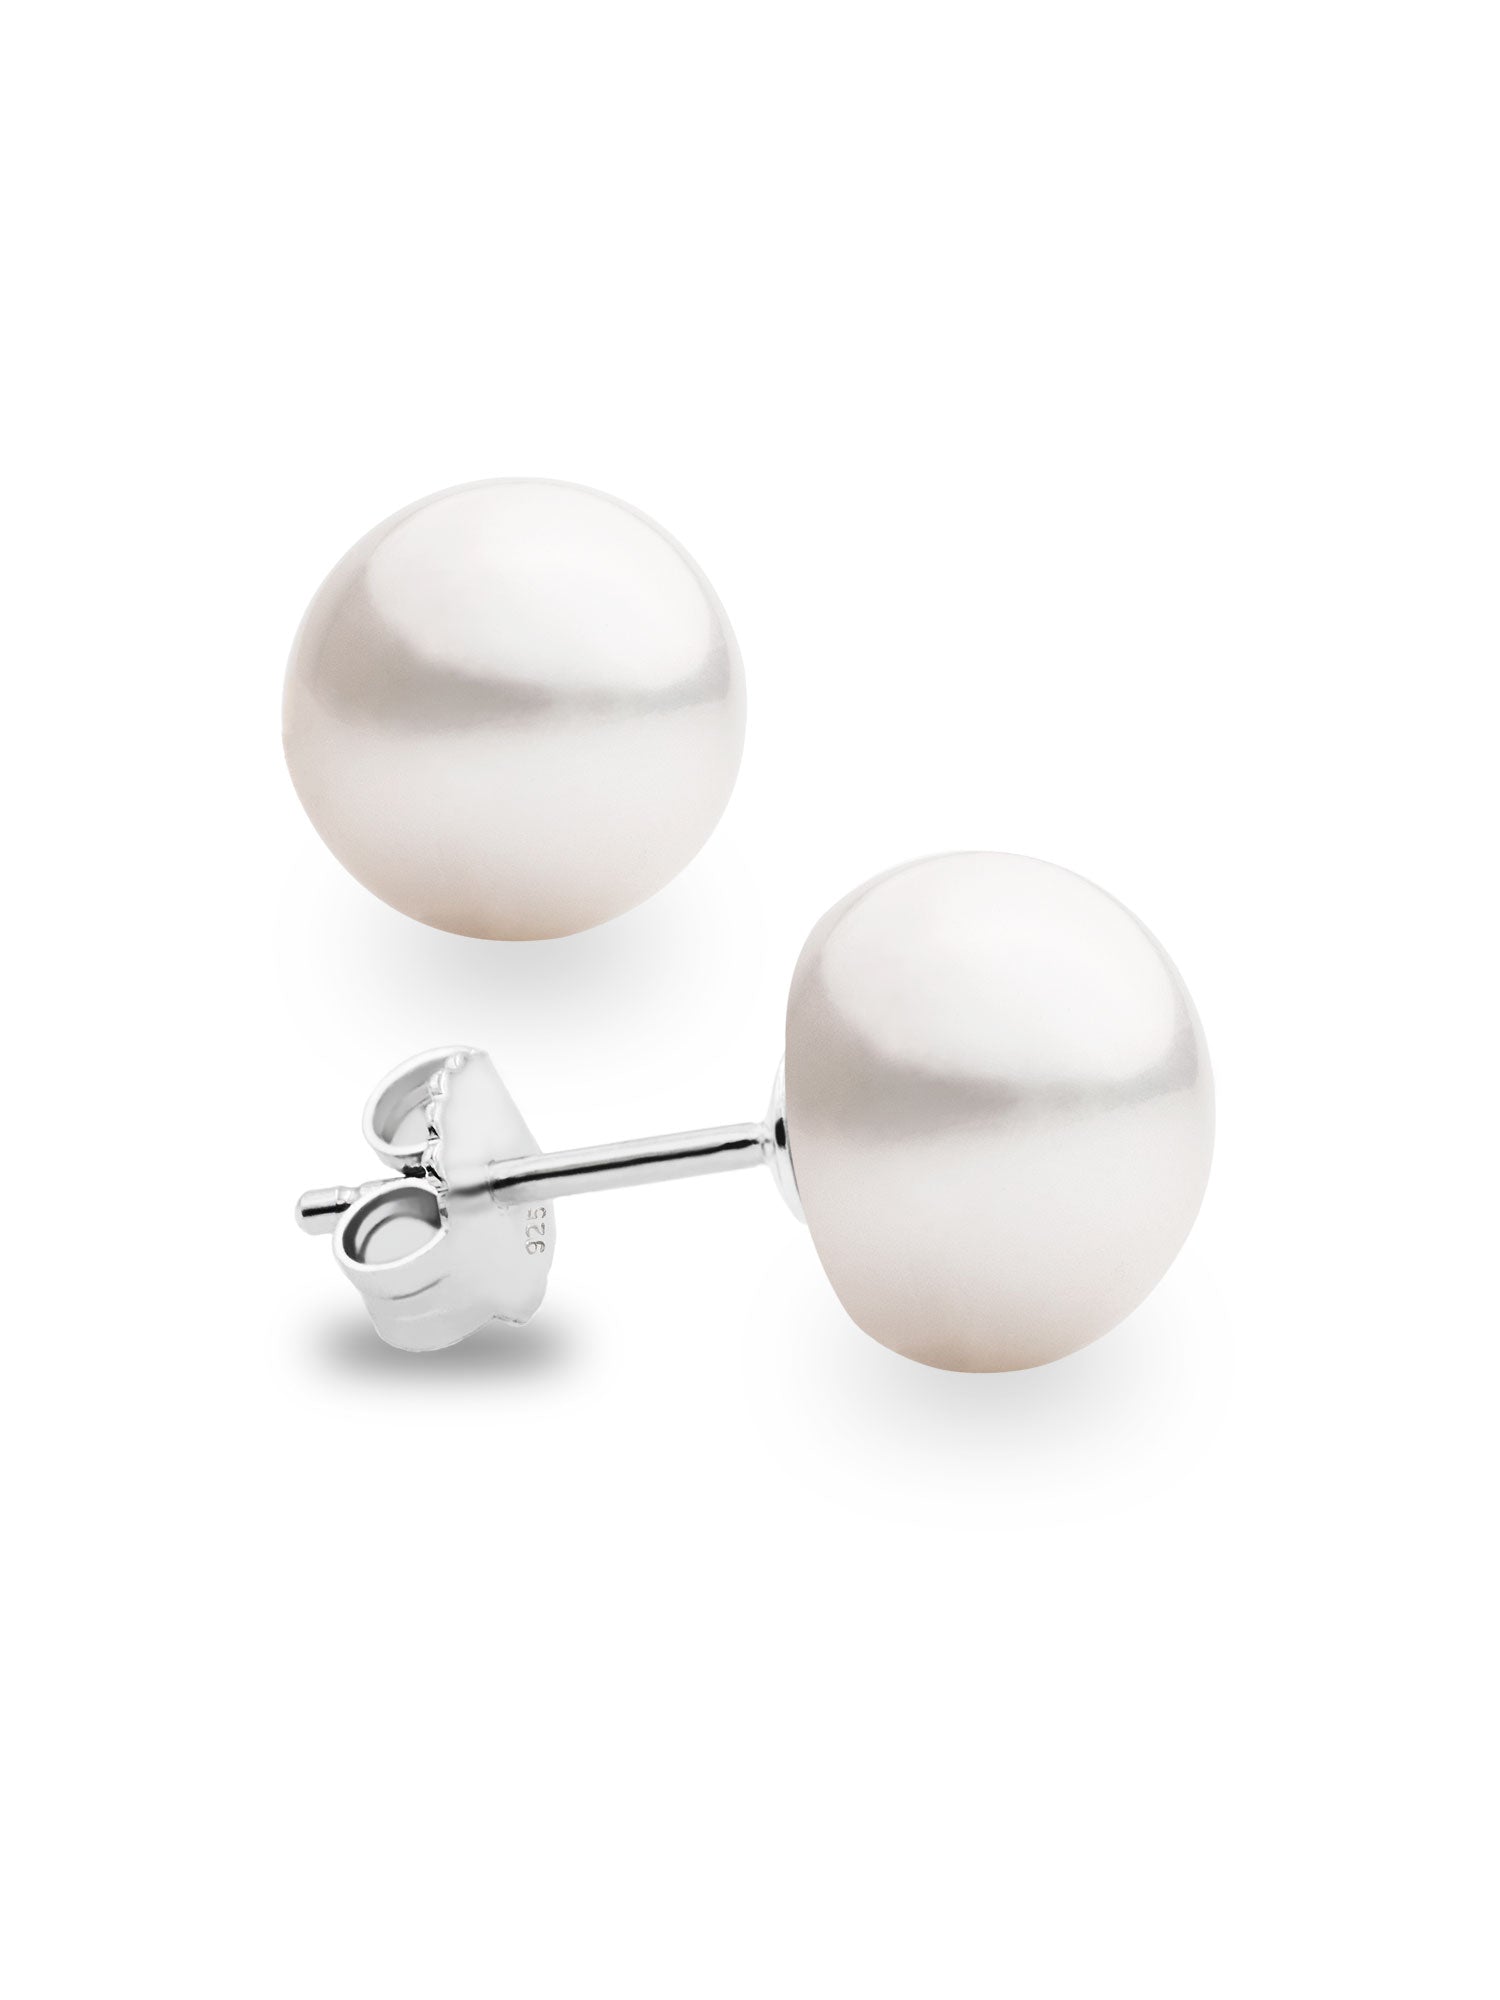 7mm Button Pearl Earrings